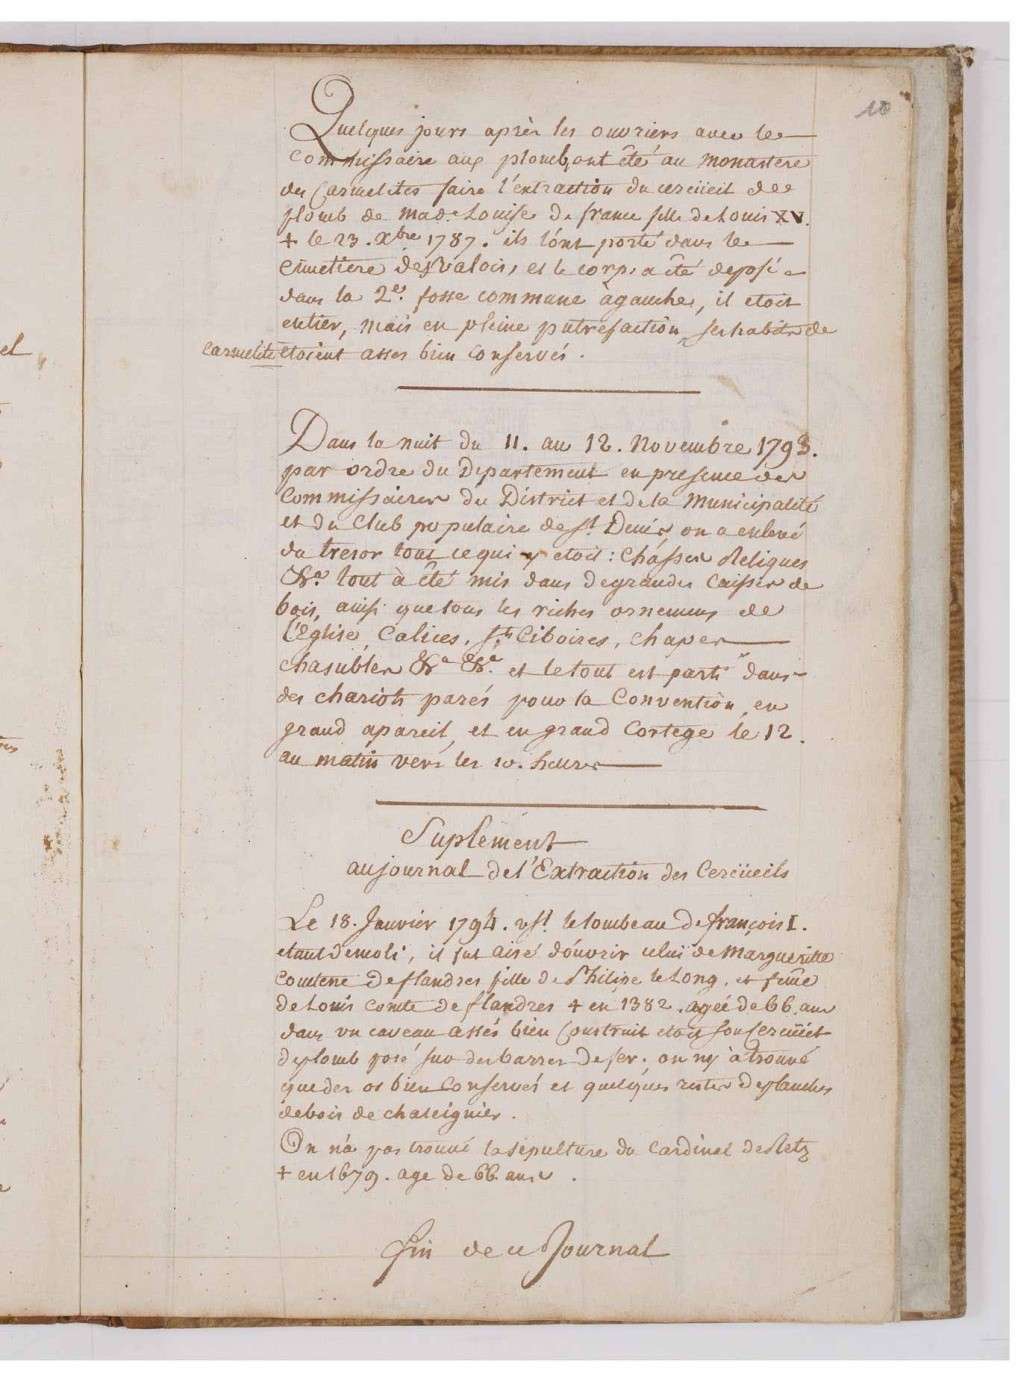 18 octobre 1793: Procès-verbal de l'extraction des cercueils royaux et princiers 00019110